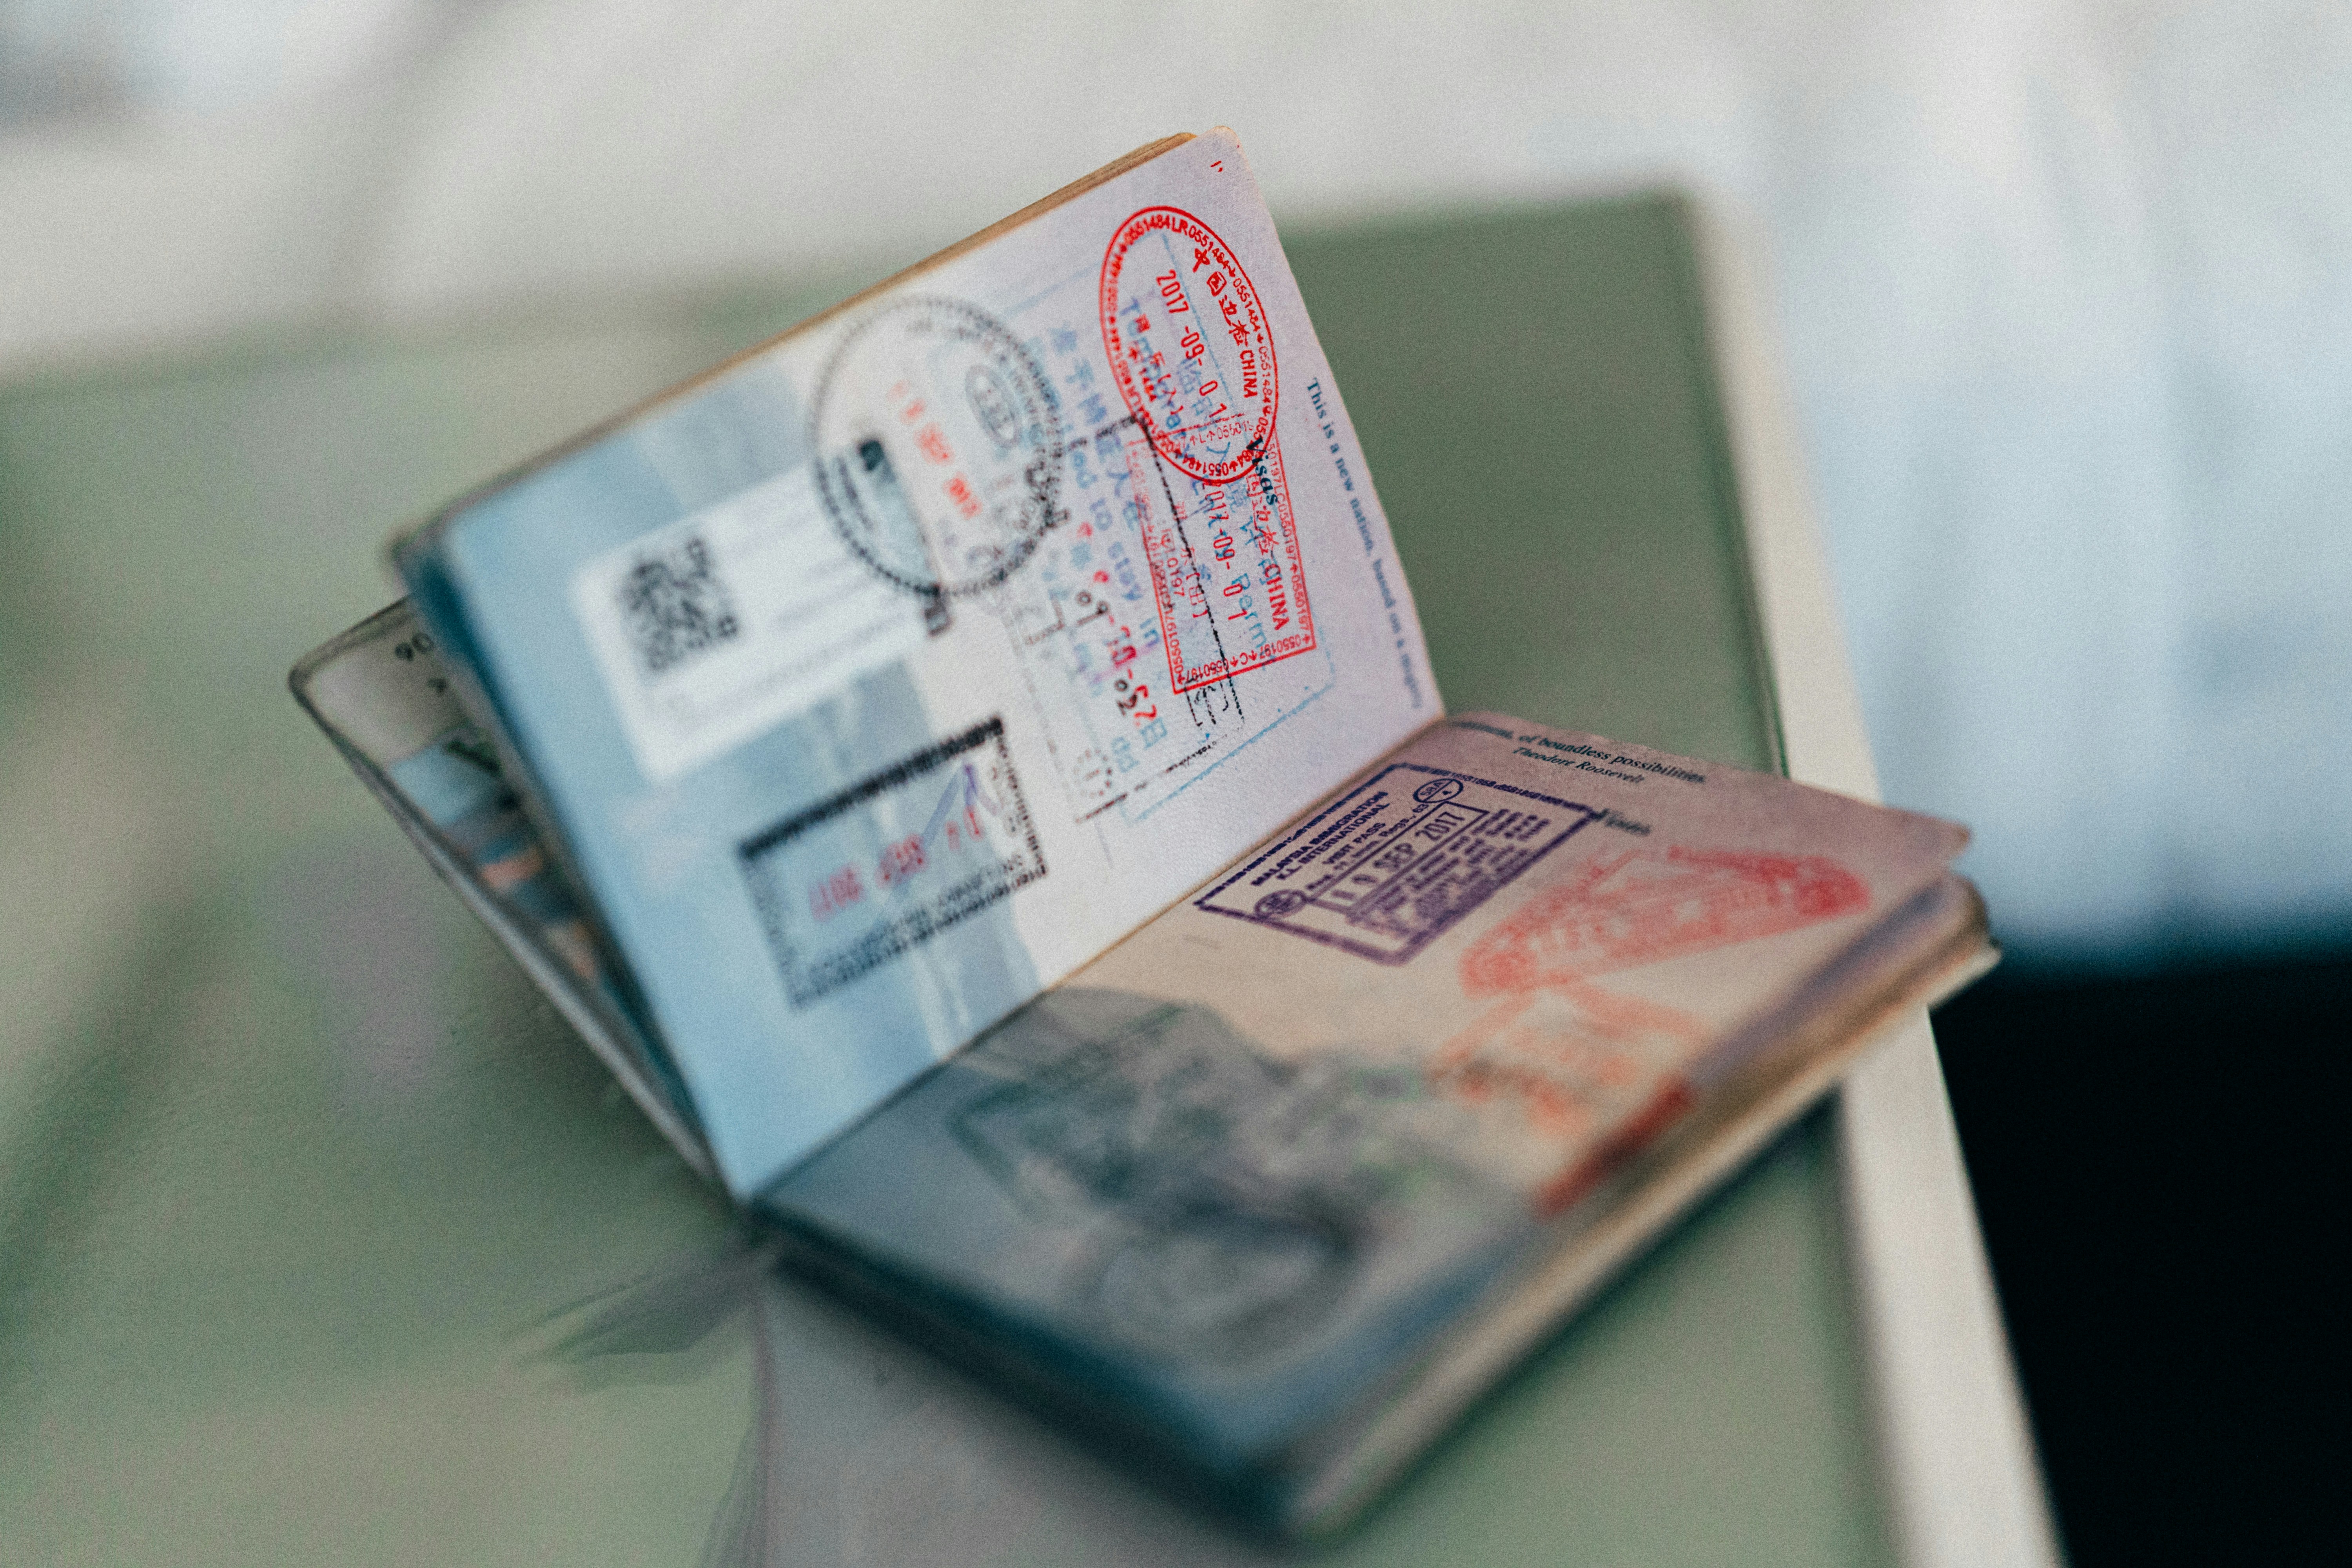 Autoridades migratorias extenderán pasaportes en una jornada especial el 25 de mayo. (Foto Prensa Libre: Unsplash)